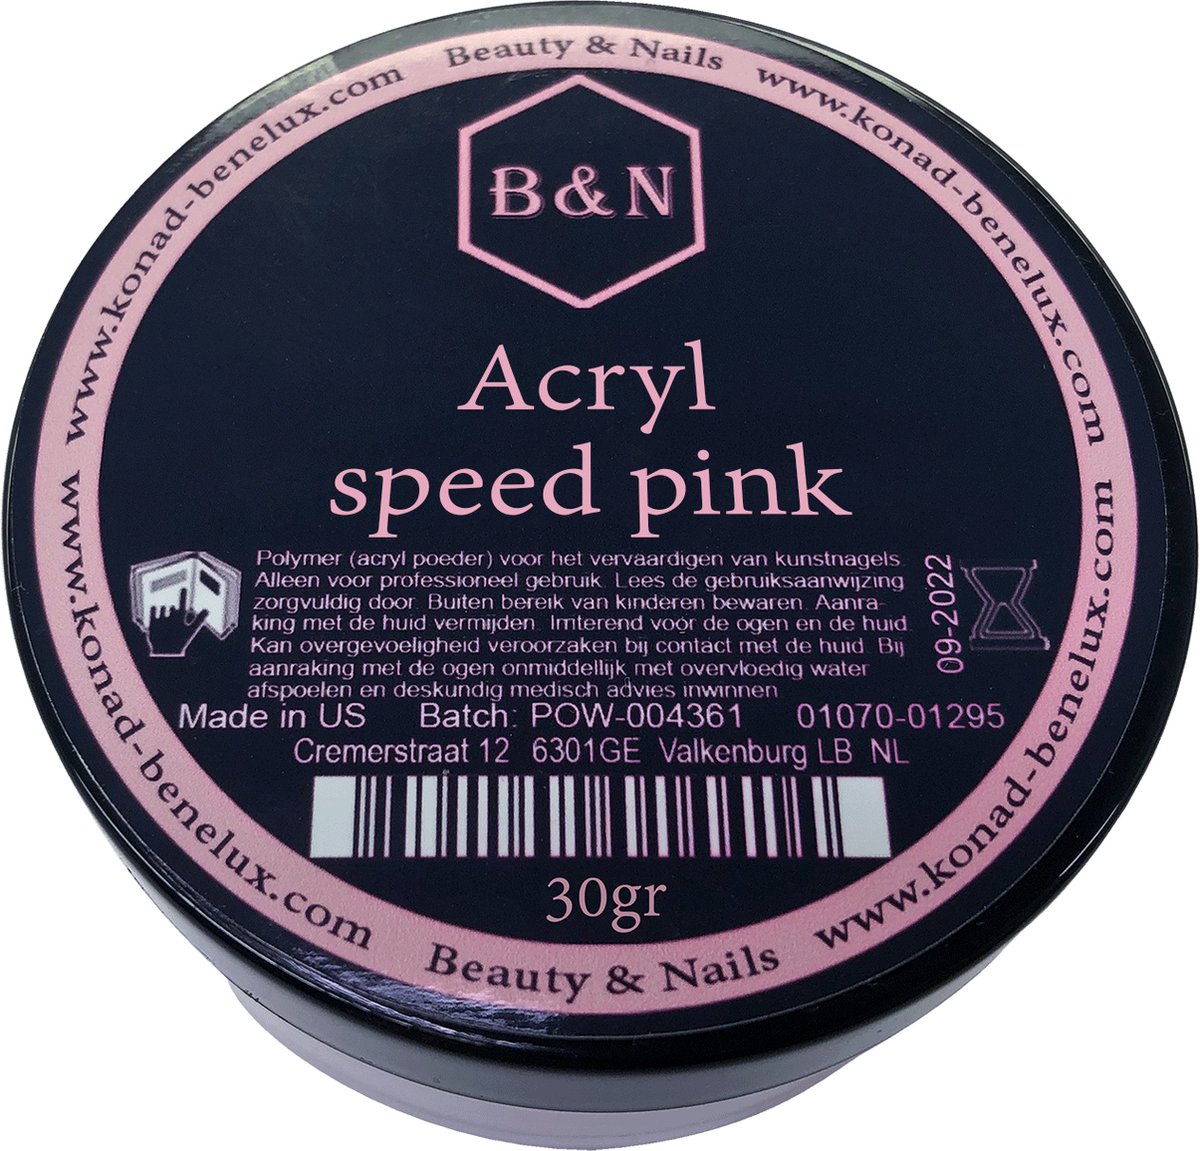 Acryl - speed pink - 30 gr | B&N - acrylpoeder - VEGAN - acrylpoeder